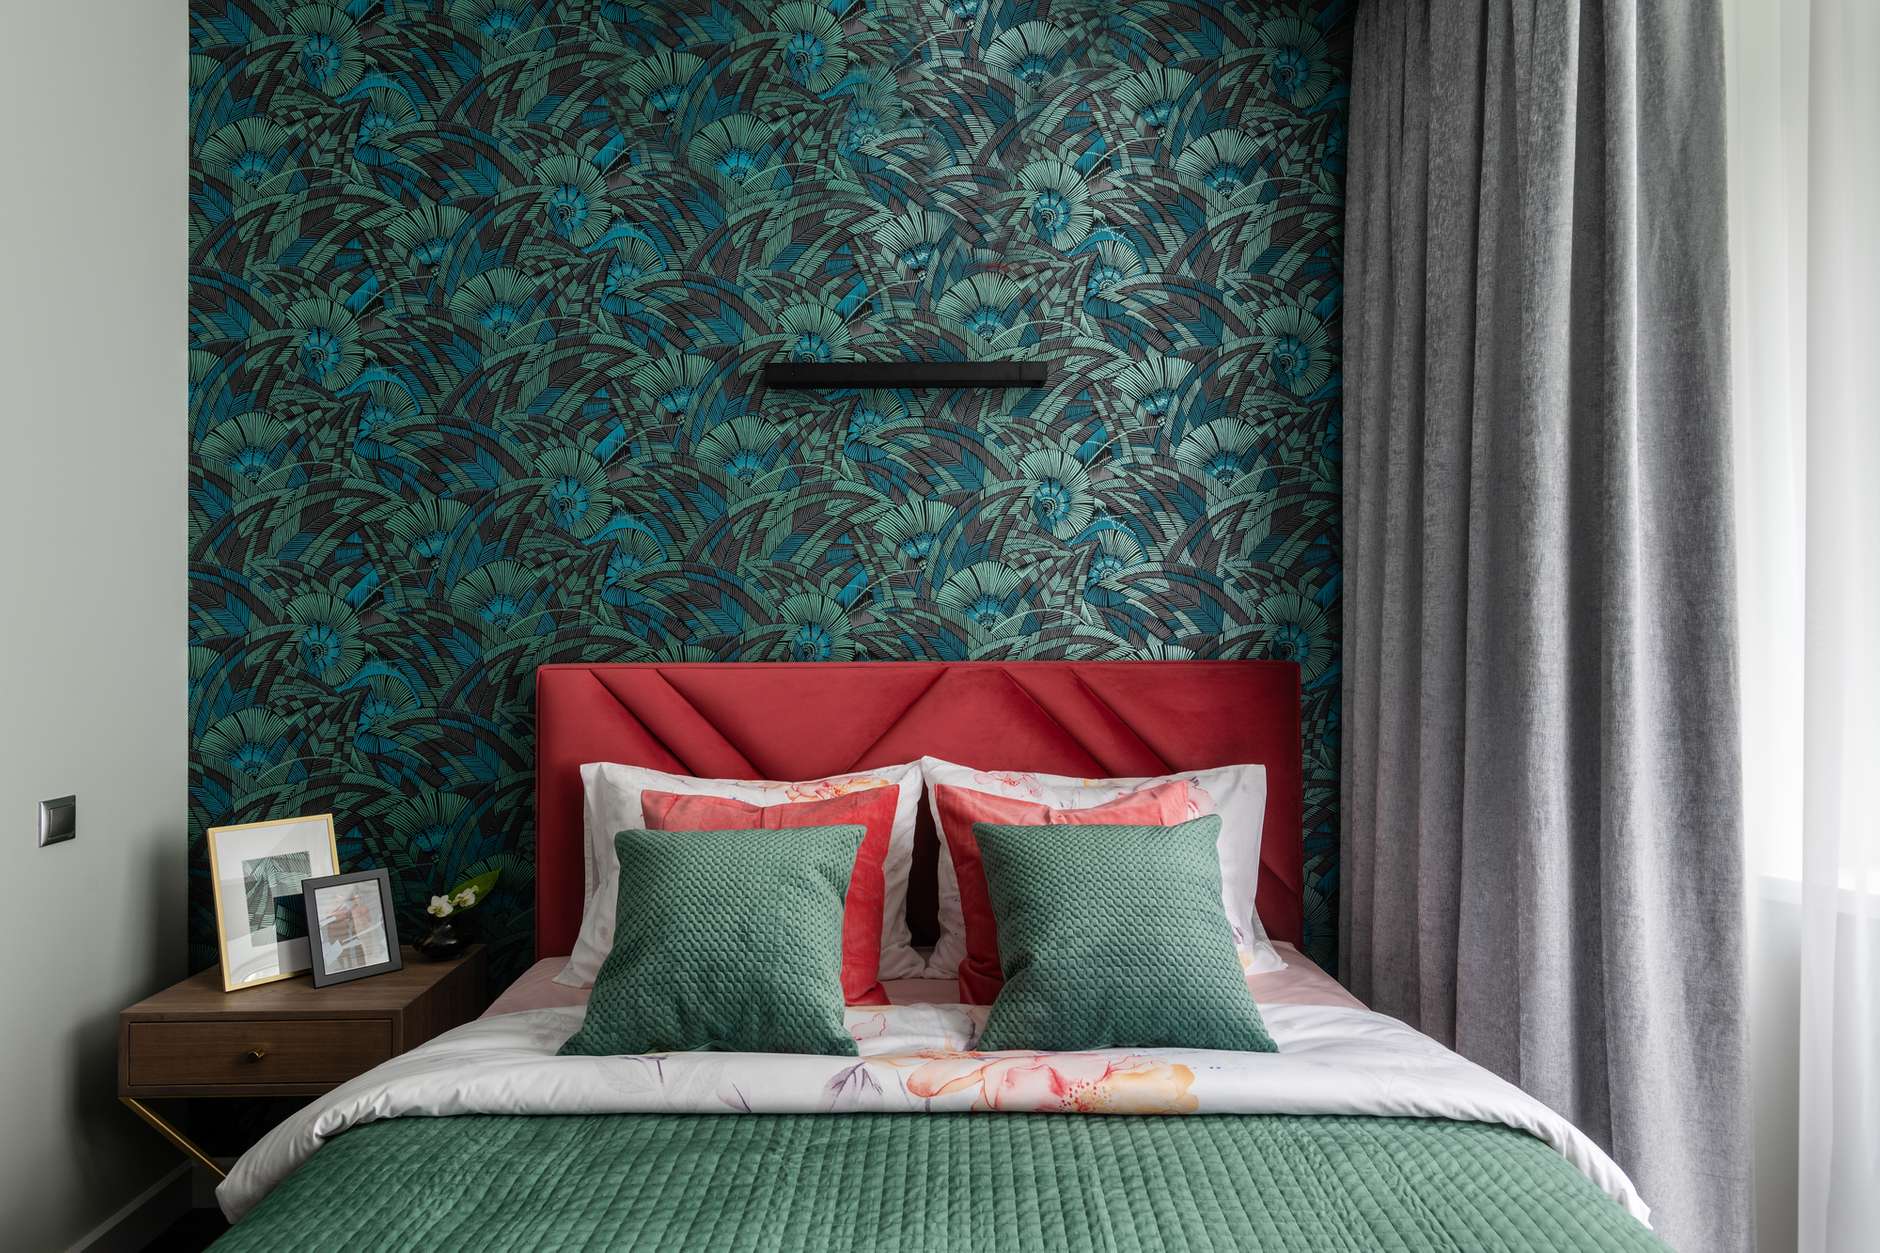 Phòng ngủ tuy nhỏ nhưng ấn tượng nhờ giấy dán tường, màu xanh của chăn gối và sắc đỏ san hô khiến bạn như lạc vào một khu rừng bí ẩn.